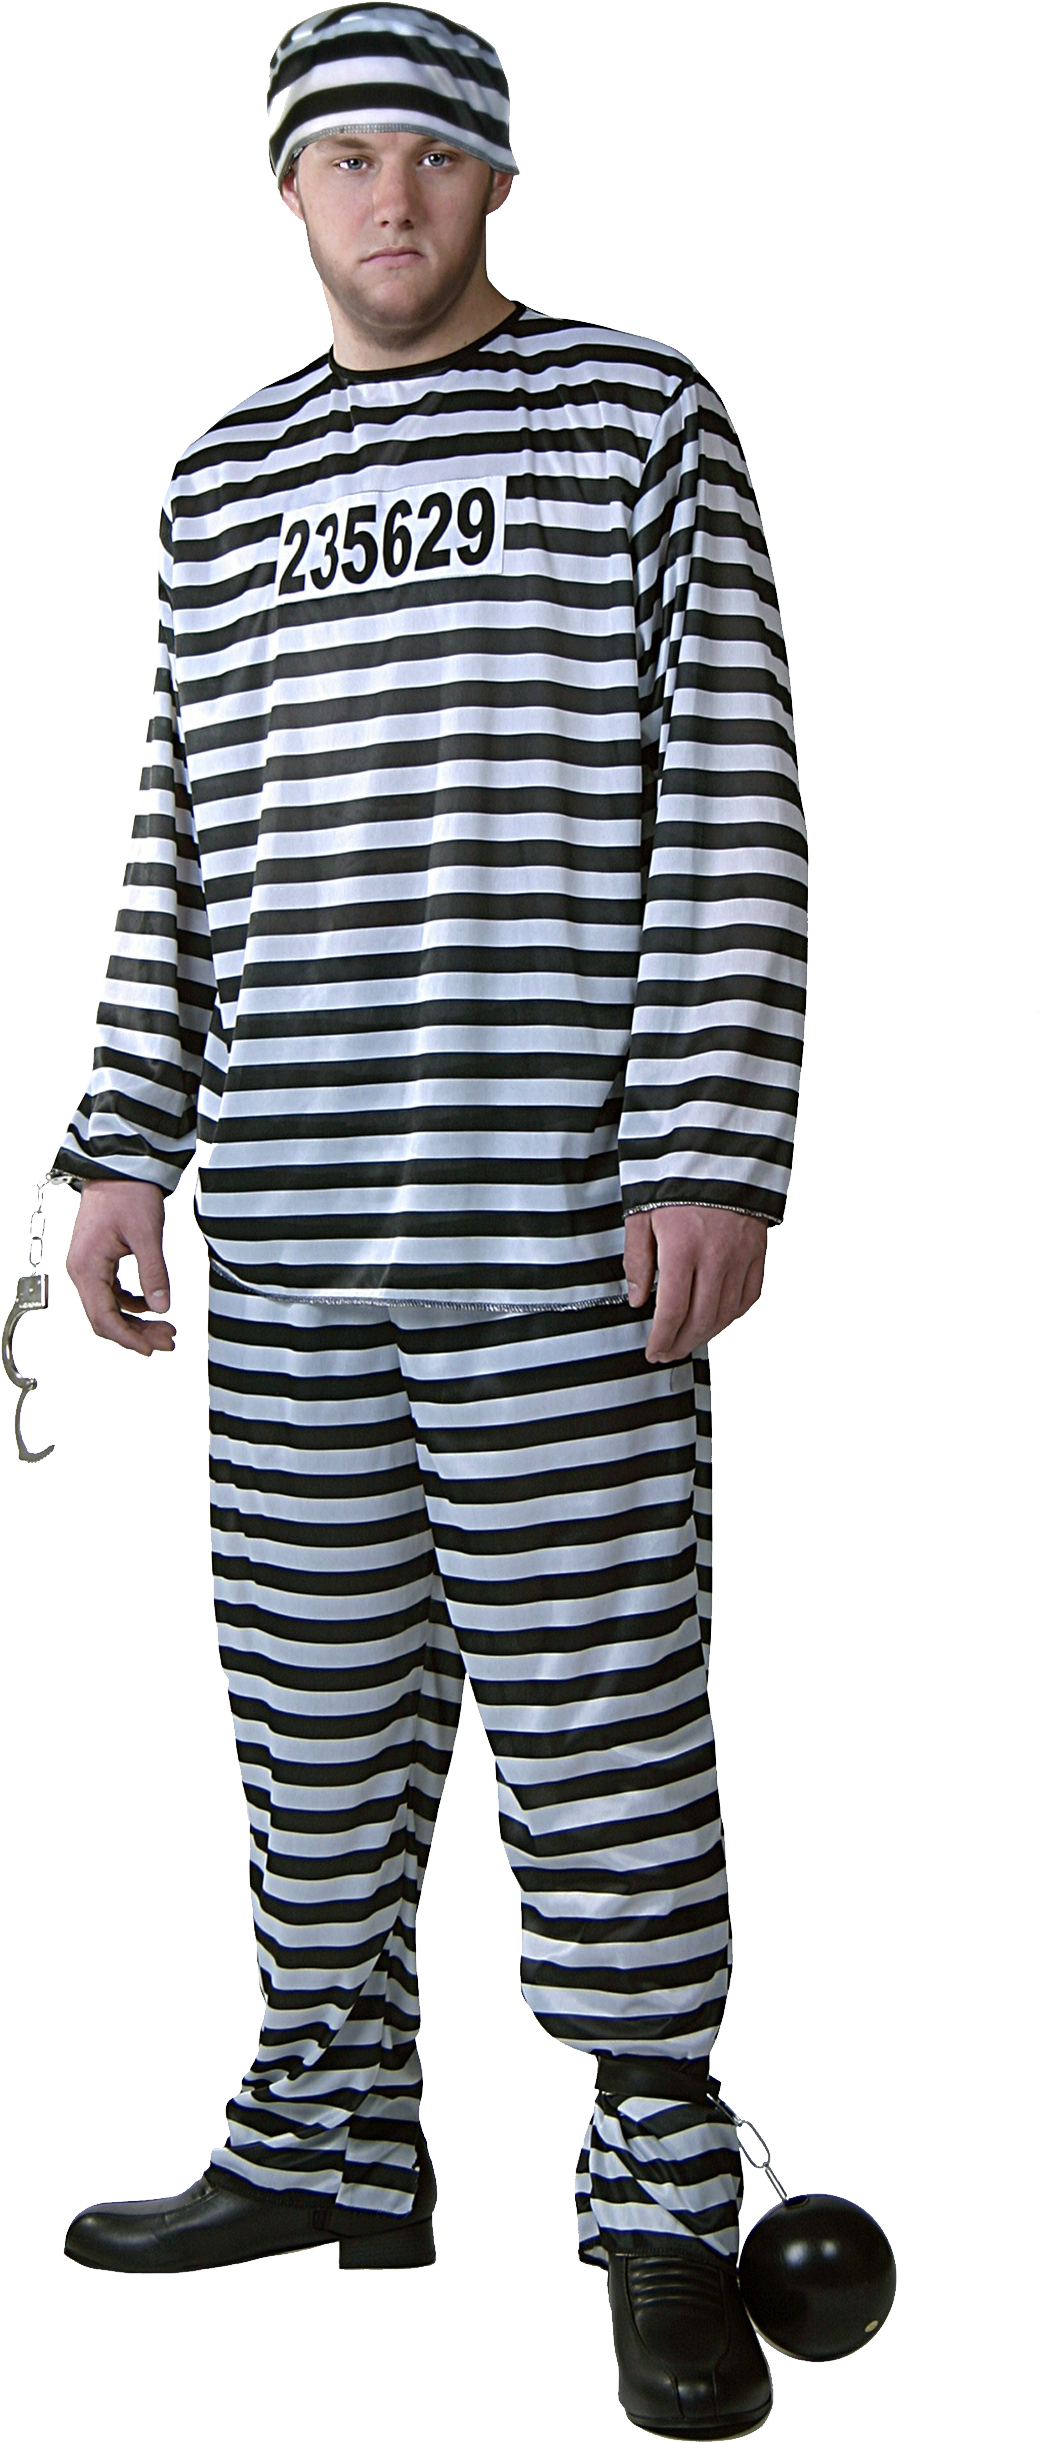 A Man In A Striped Uniform